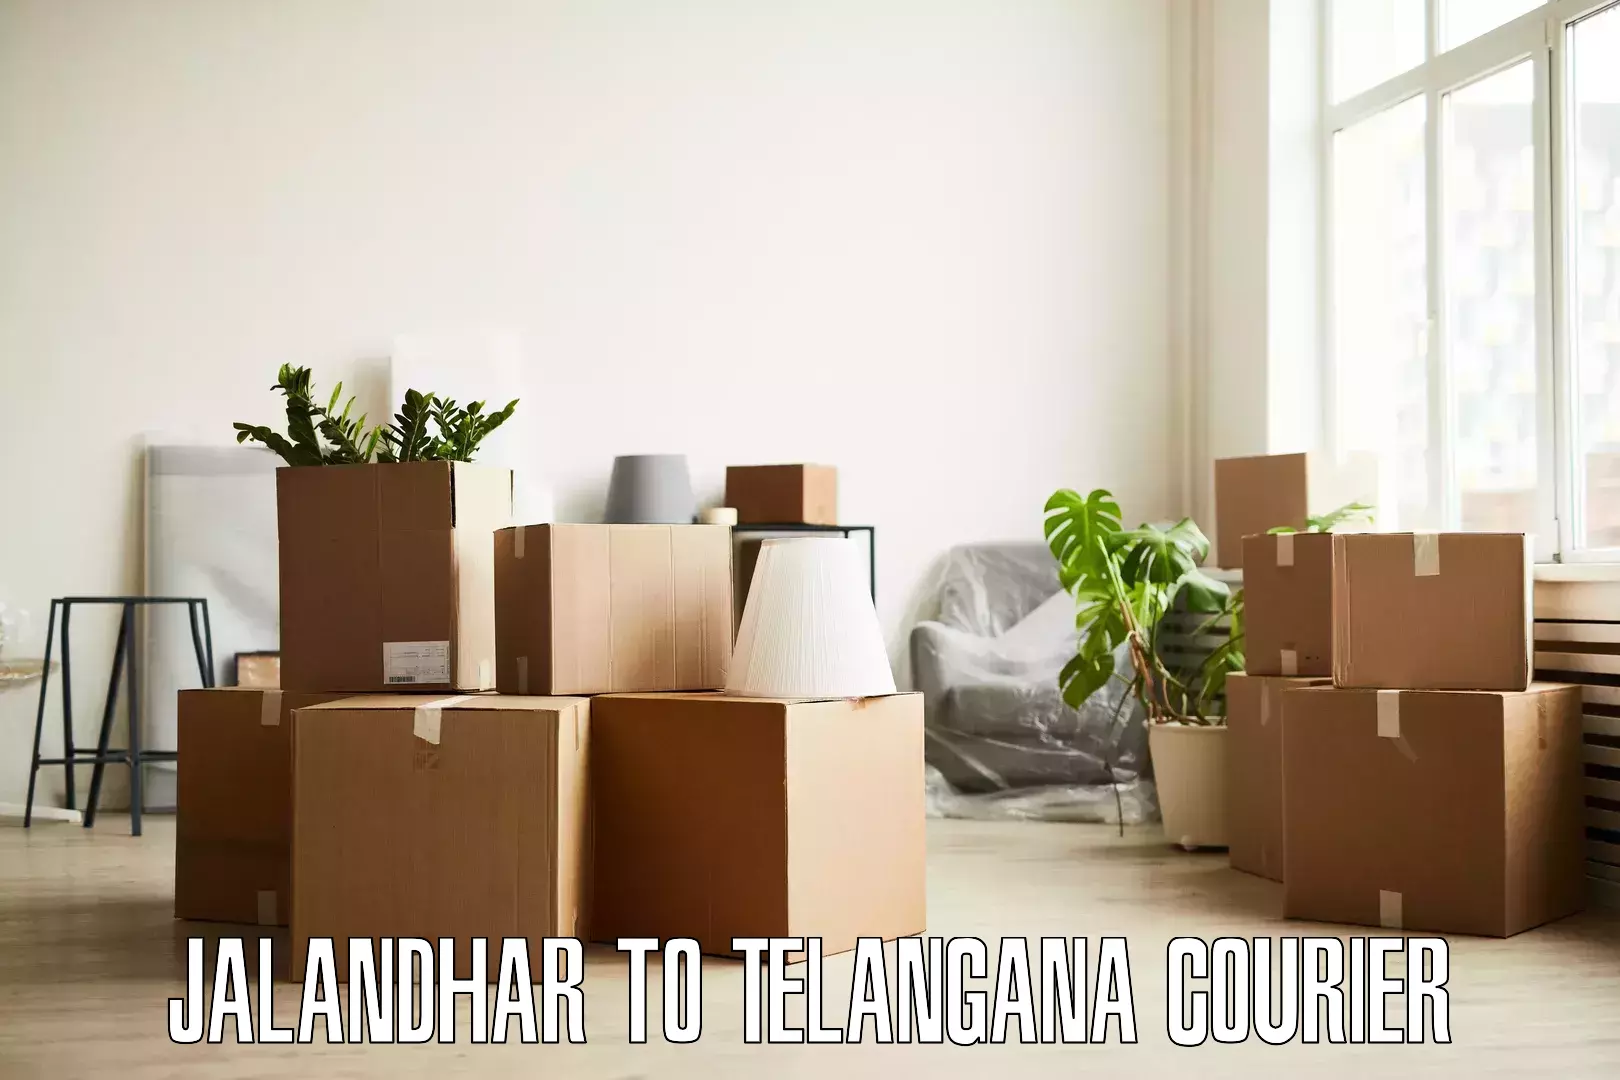 Furniture transport experts Jalandhar to Adilabad